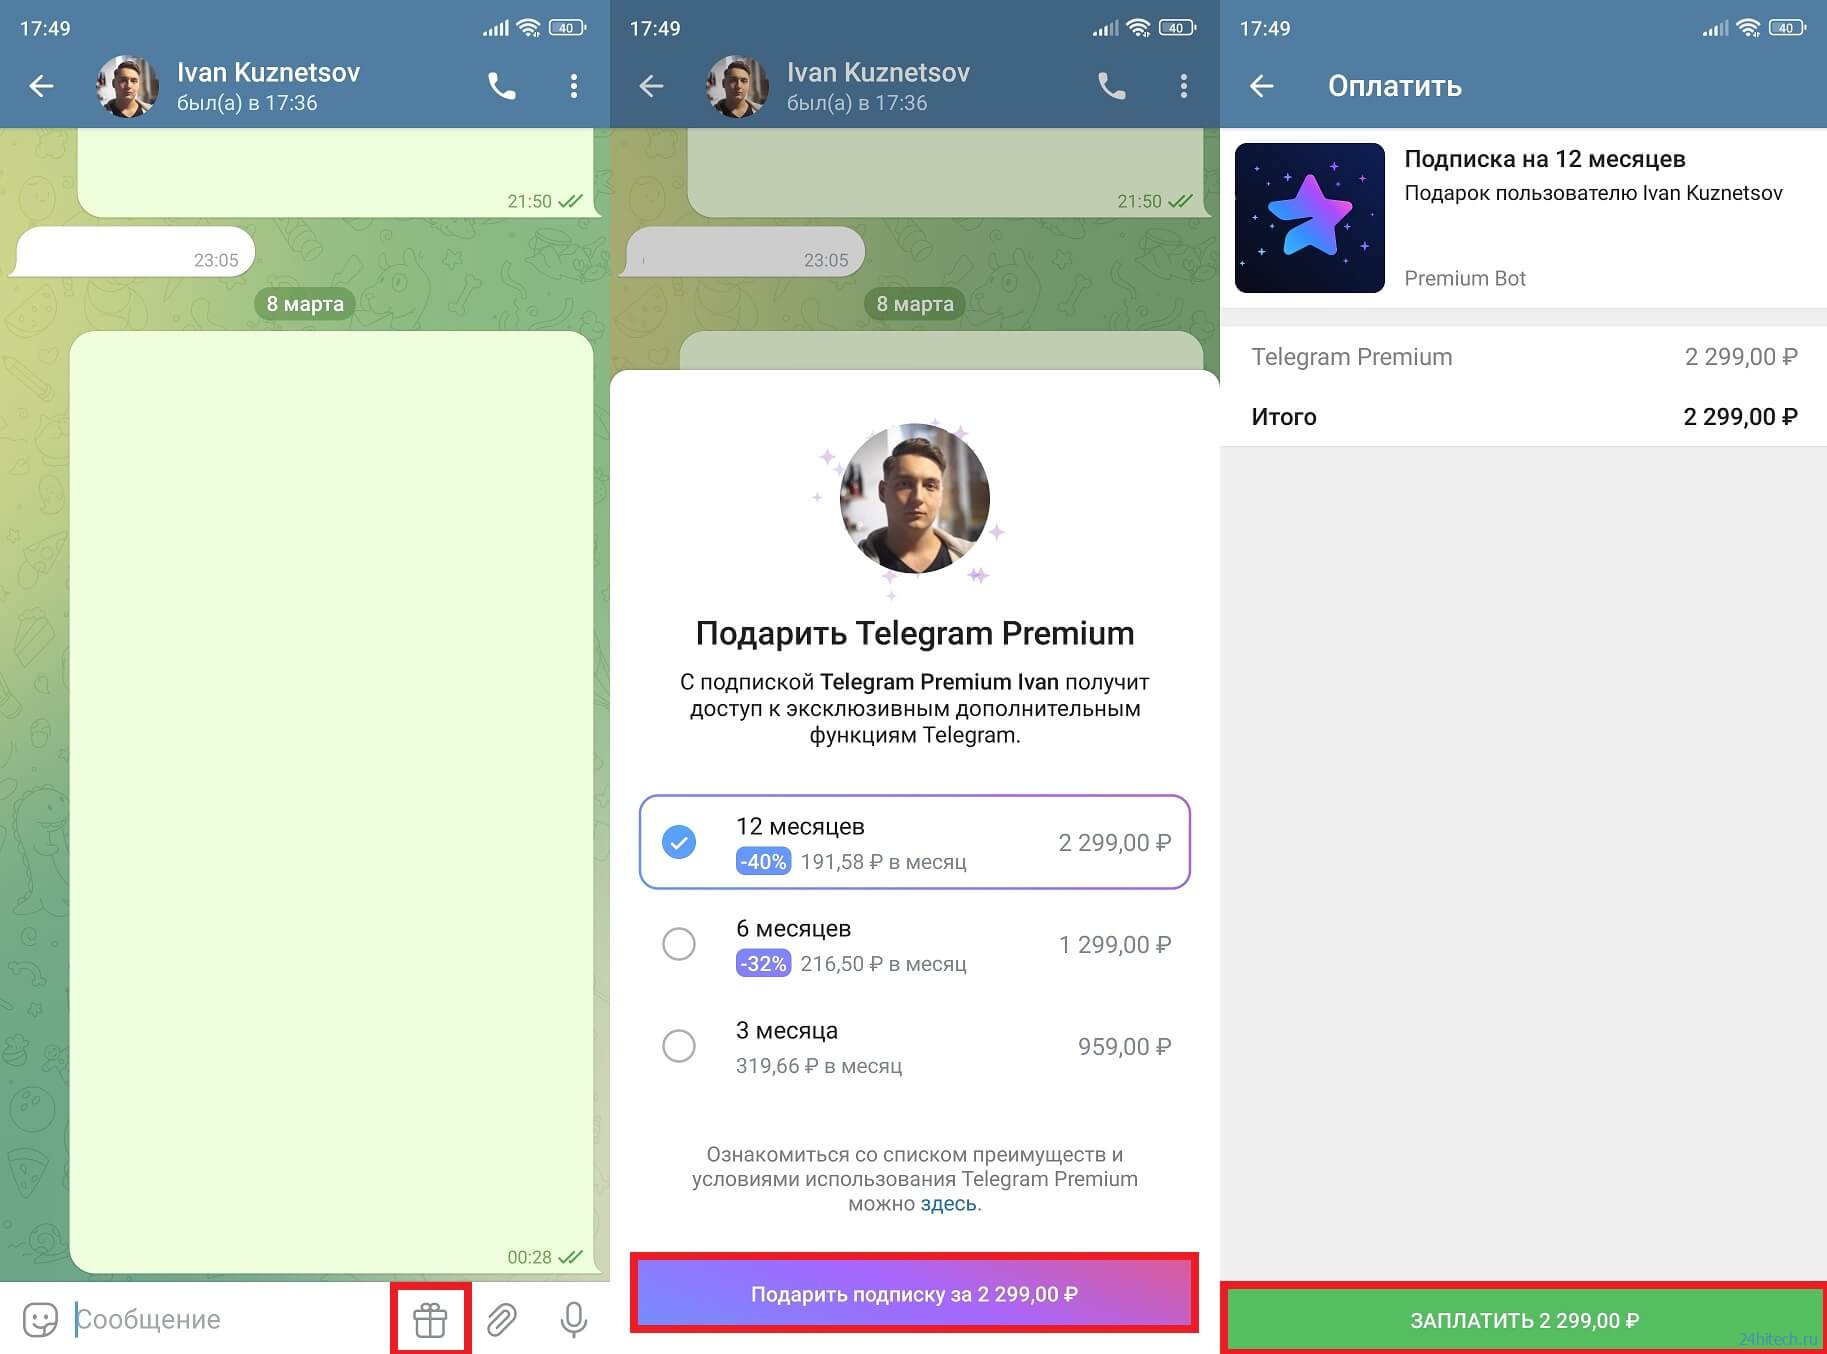 Вышло обновление Telegram 9.5 для Android, которое экономит заряд батареи и добавляет крутые функции